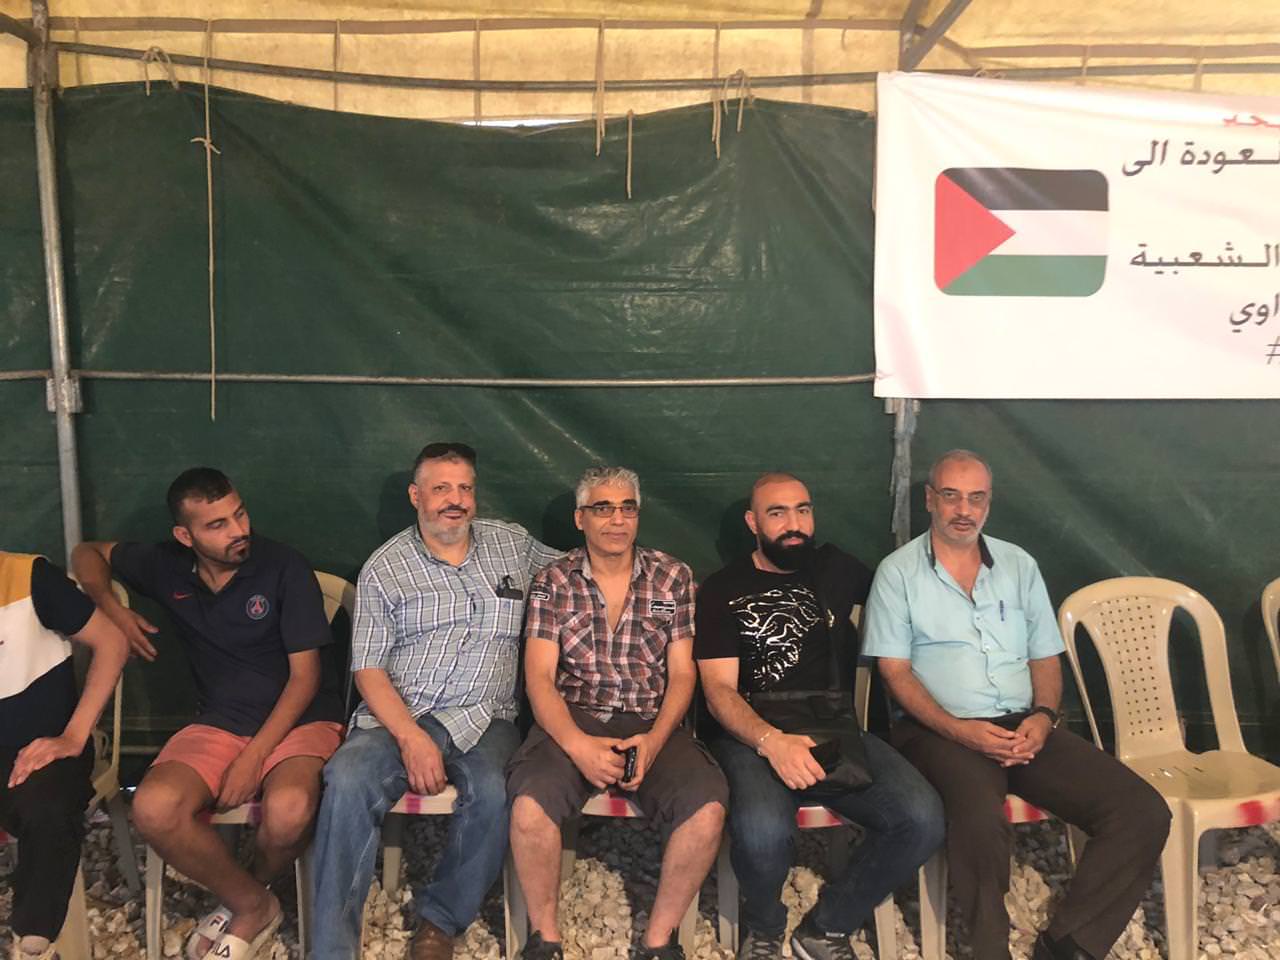 المؤتمر الشعبي لفلسطينيي الخارج يشارك في خيمة الكرامة بمخيم البداوي شمالي لبنان